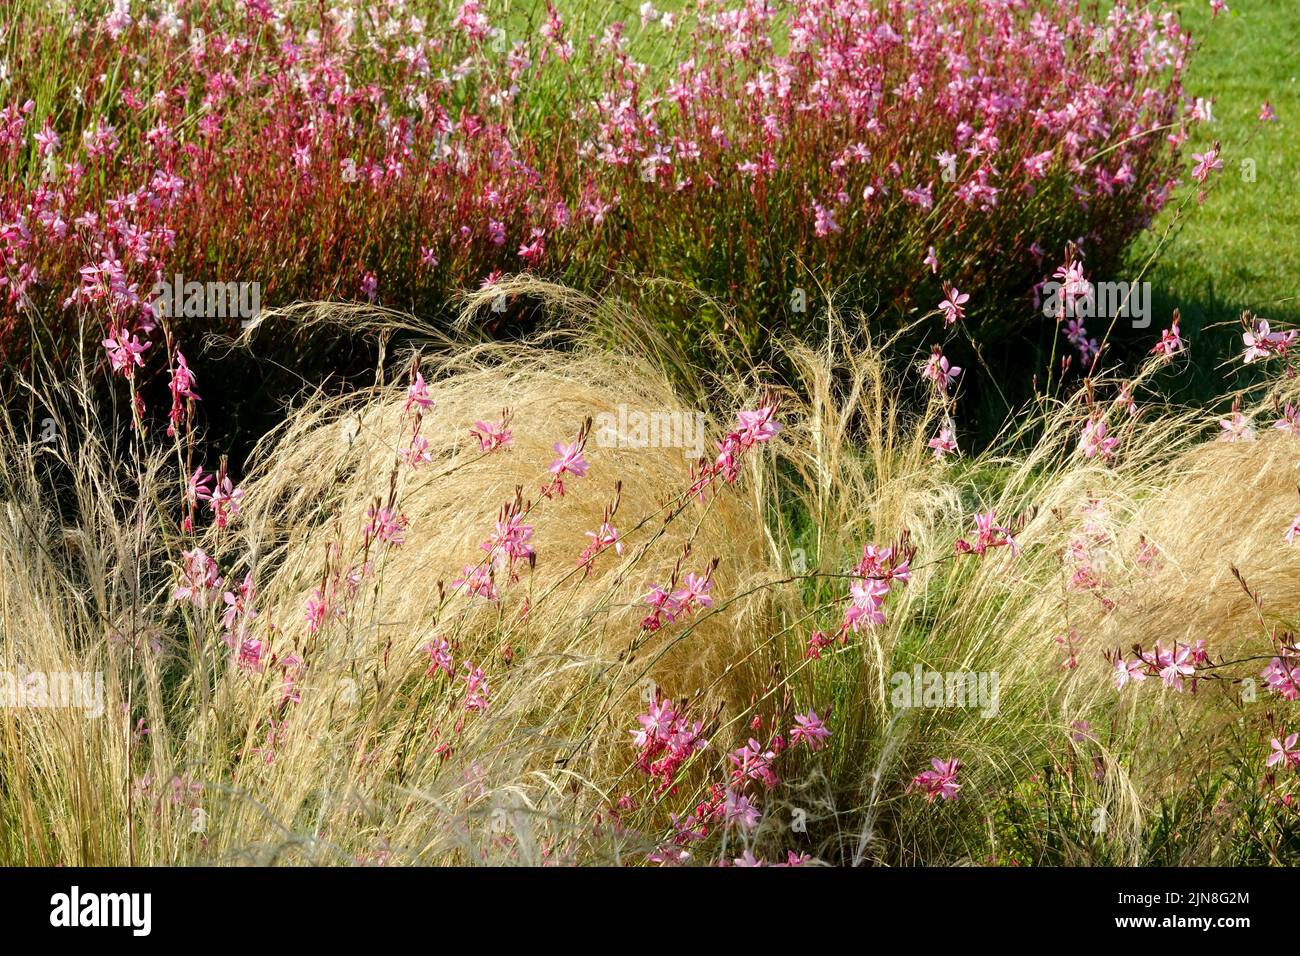 Applebloom Grass, Rose, Oenothera lindheimeri, bordure, lit de fleurs, Queue de cheval été, Edge, fleurs Banque D'Images